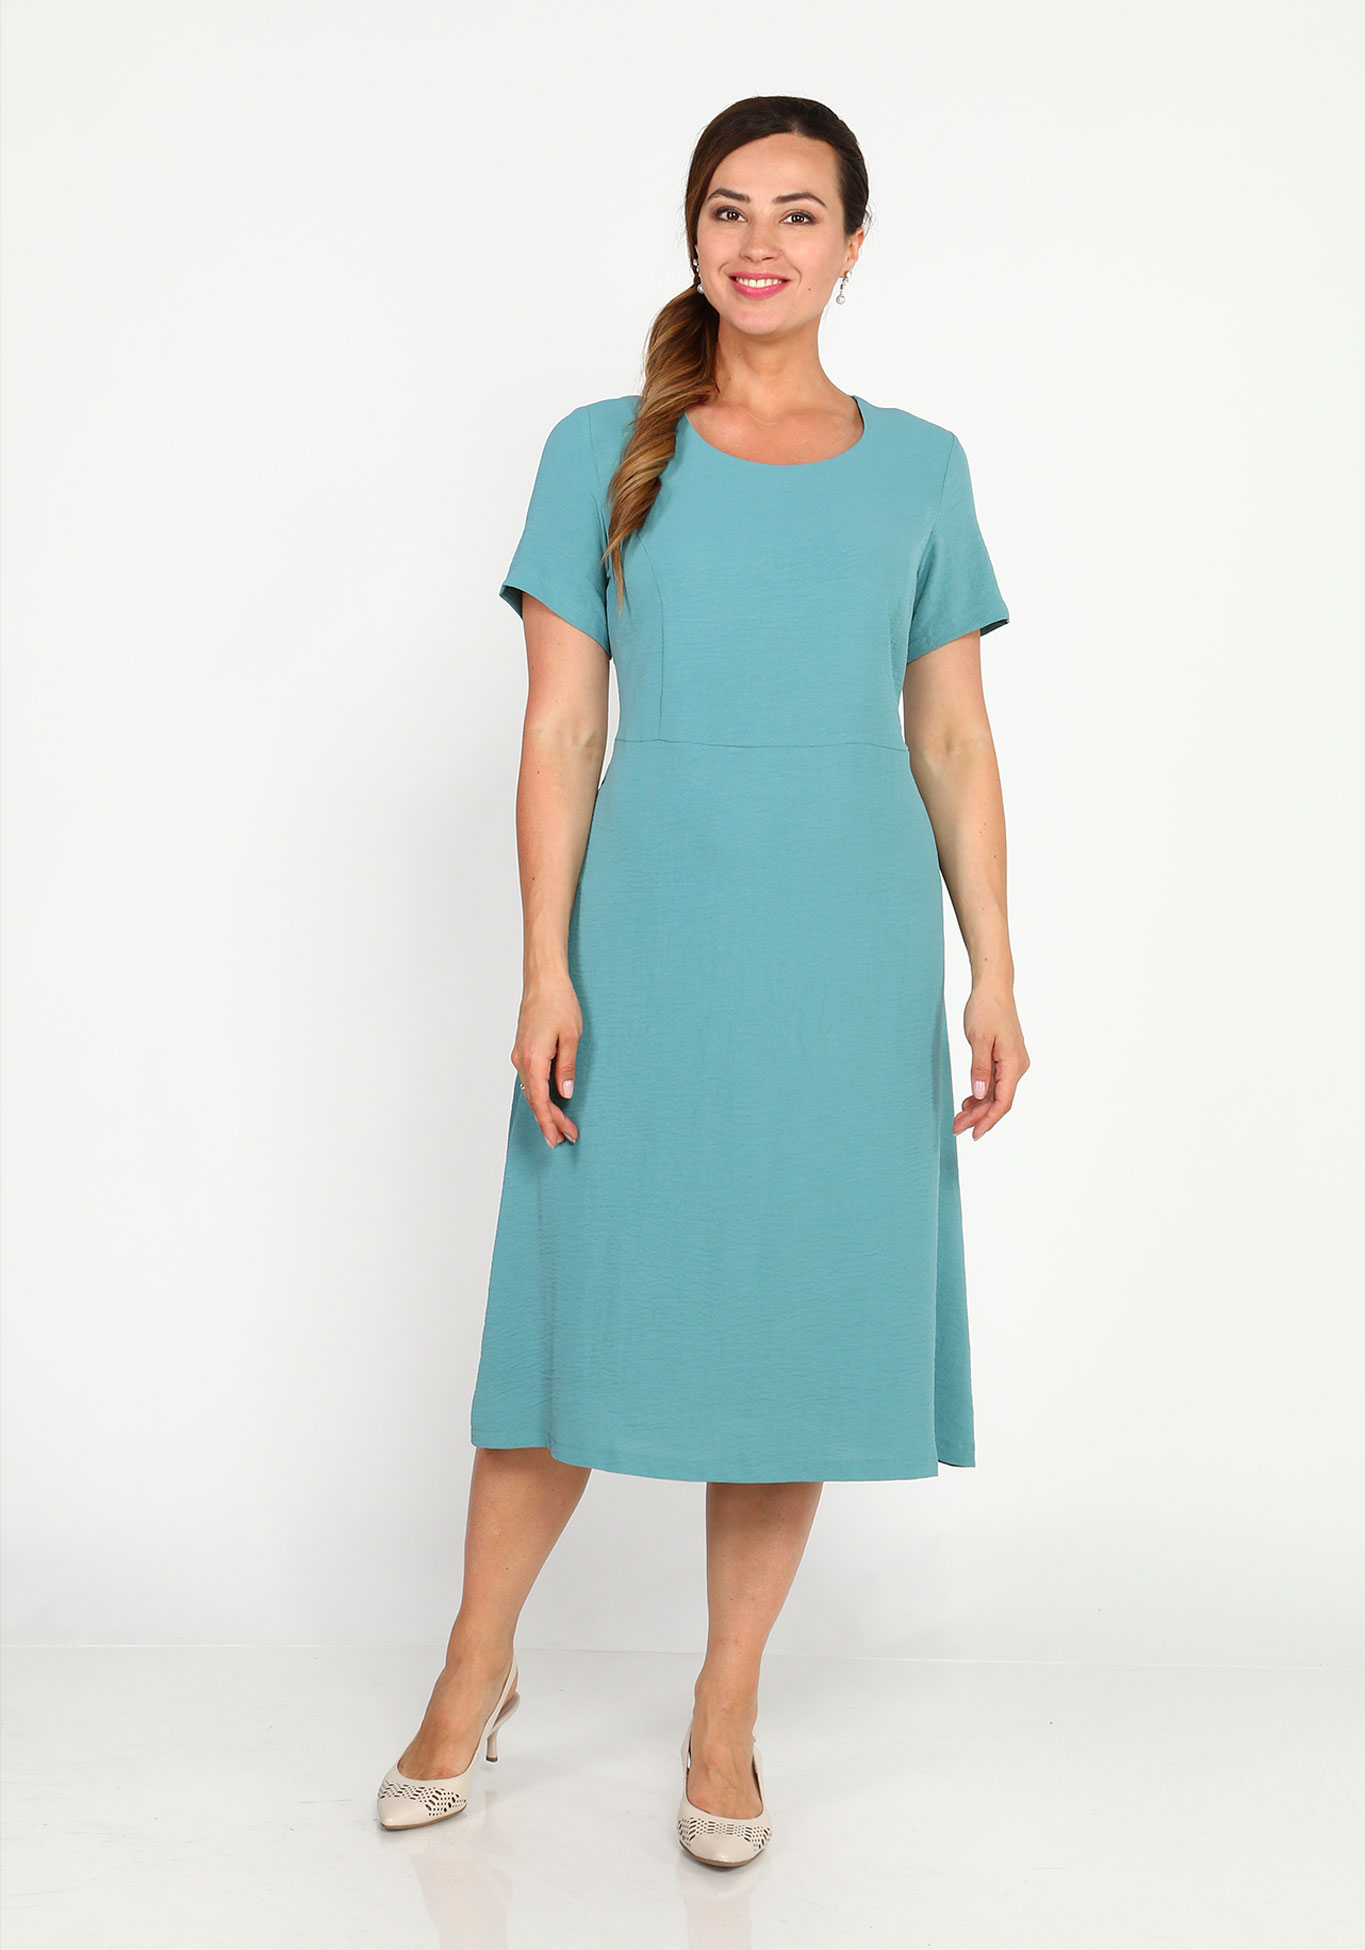 Платье с круглым вырезом и расклешенной юбкой Simple Story, размер 44, цвет голубой - фото 1